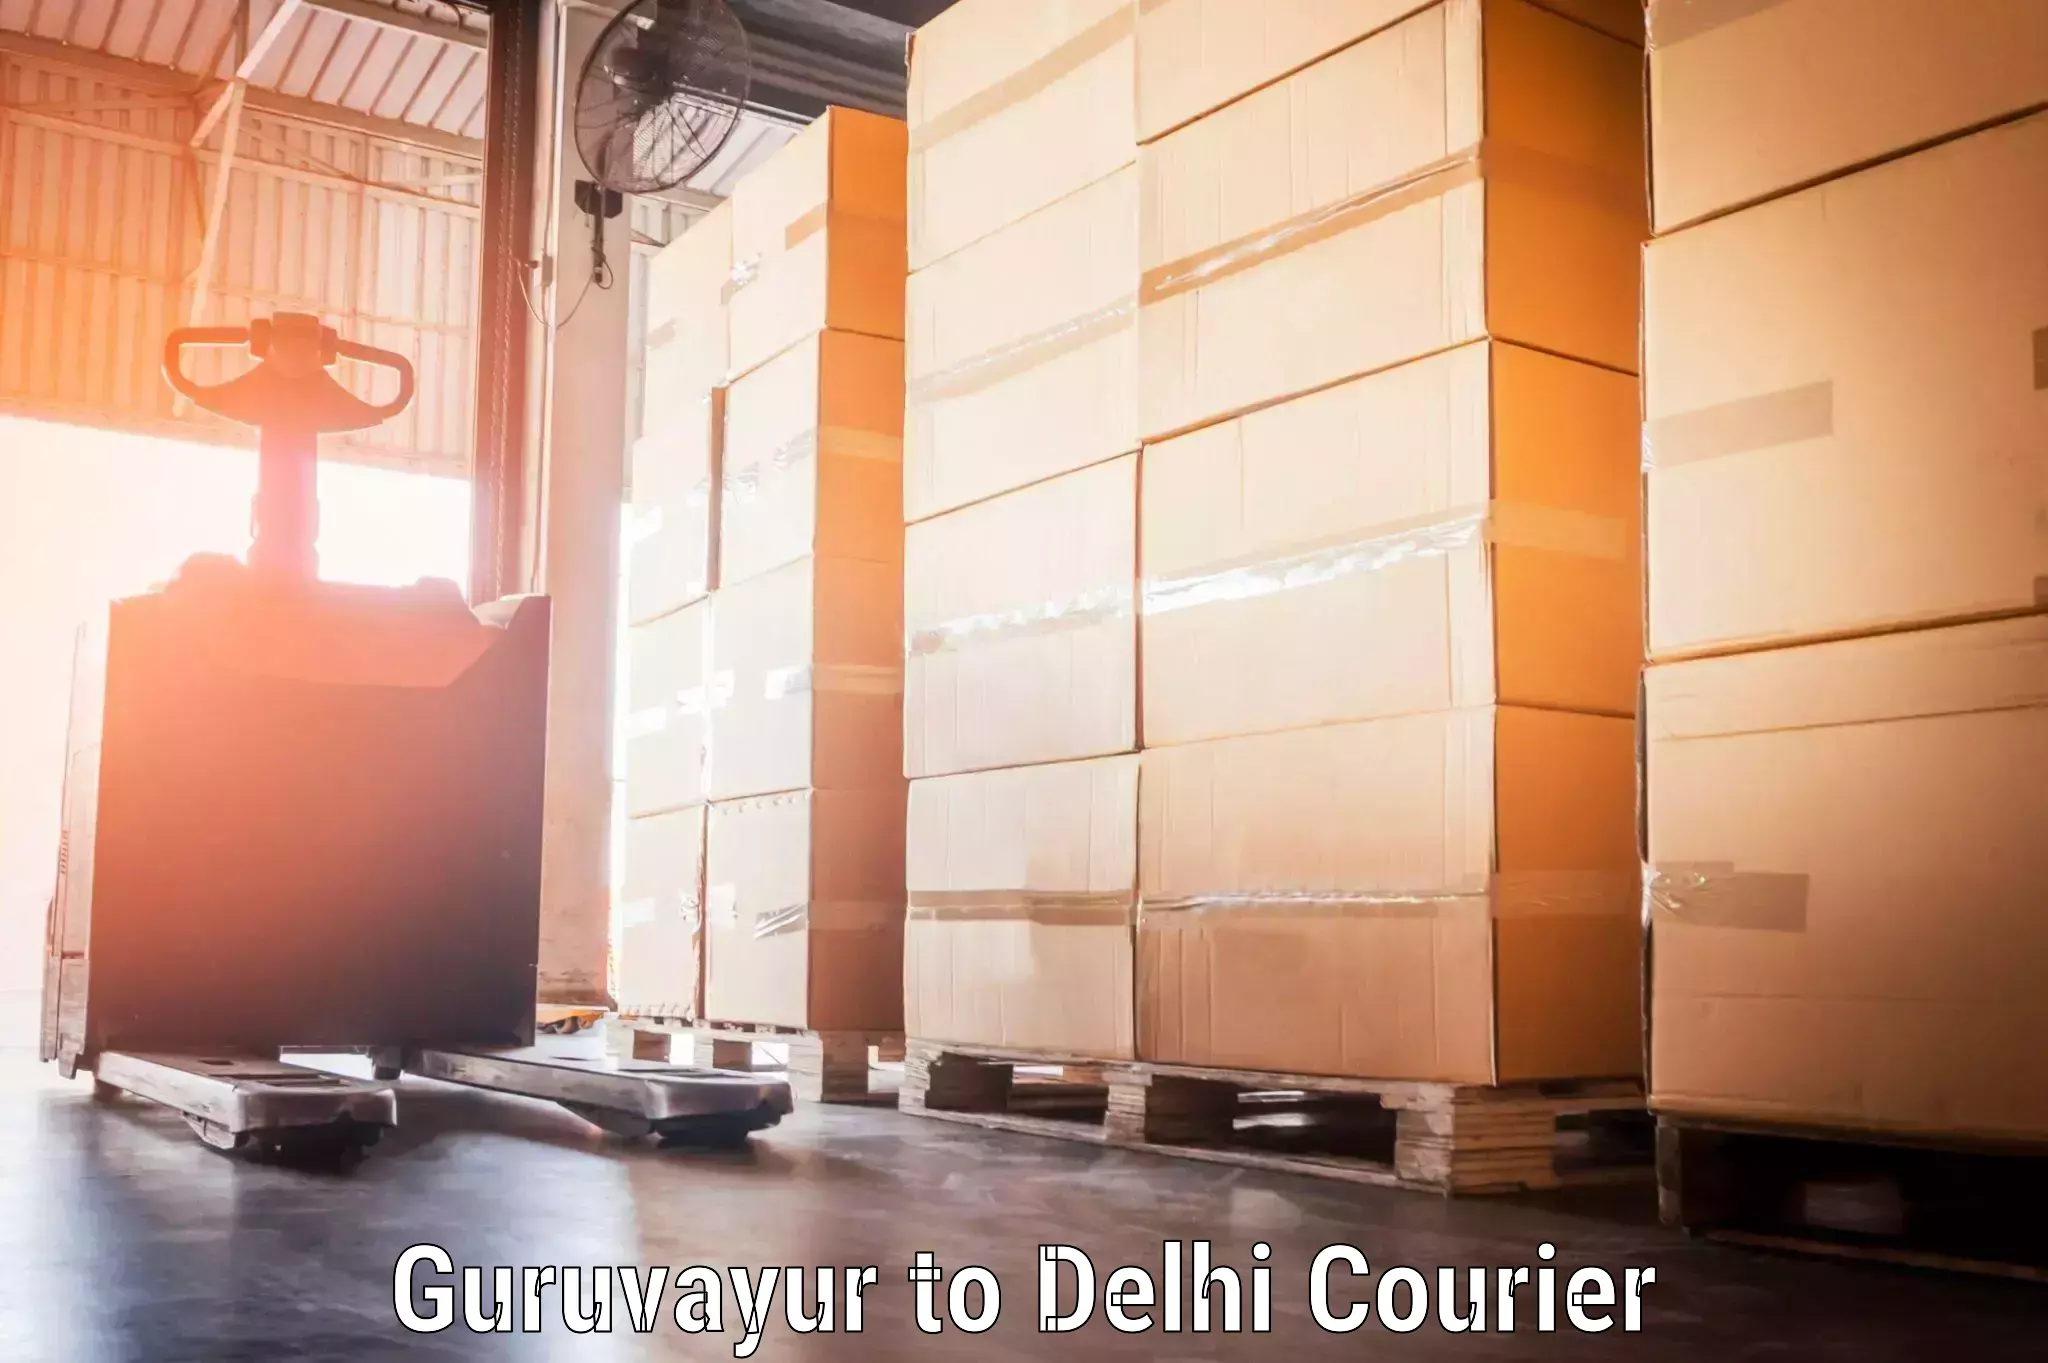 Automated luggage transport Guruvayur to NCR